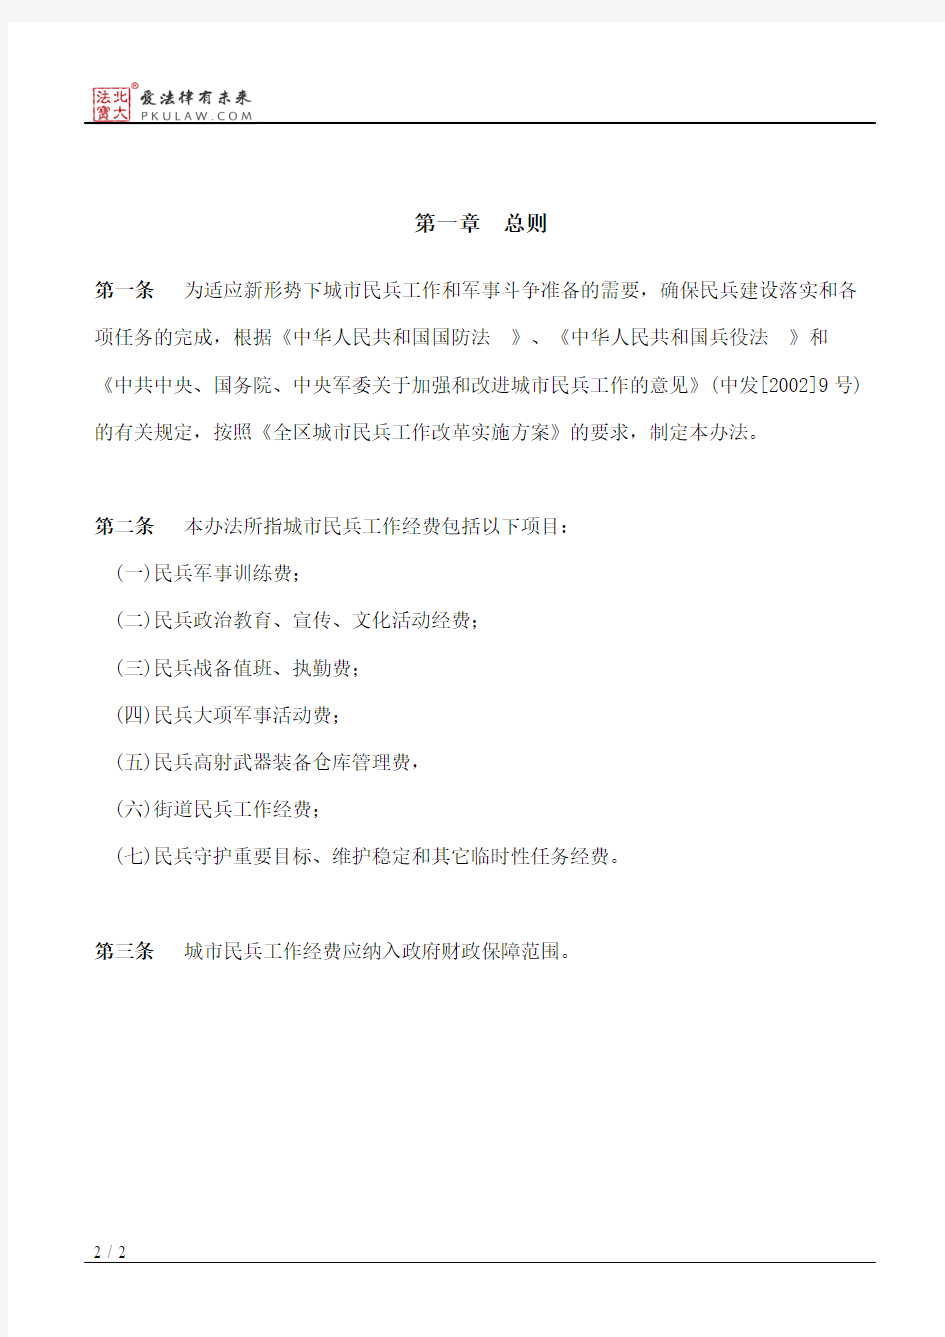 广西壮族自治区人民政府、中国人民解放军广西军区关于印发广西壮